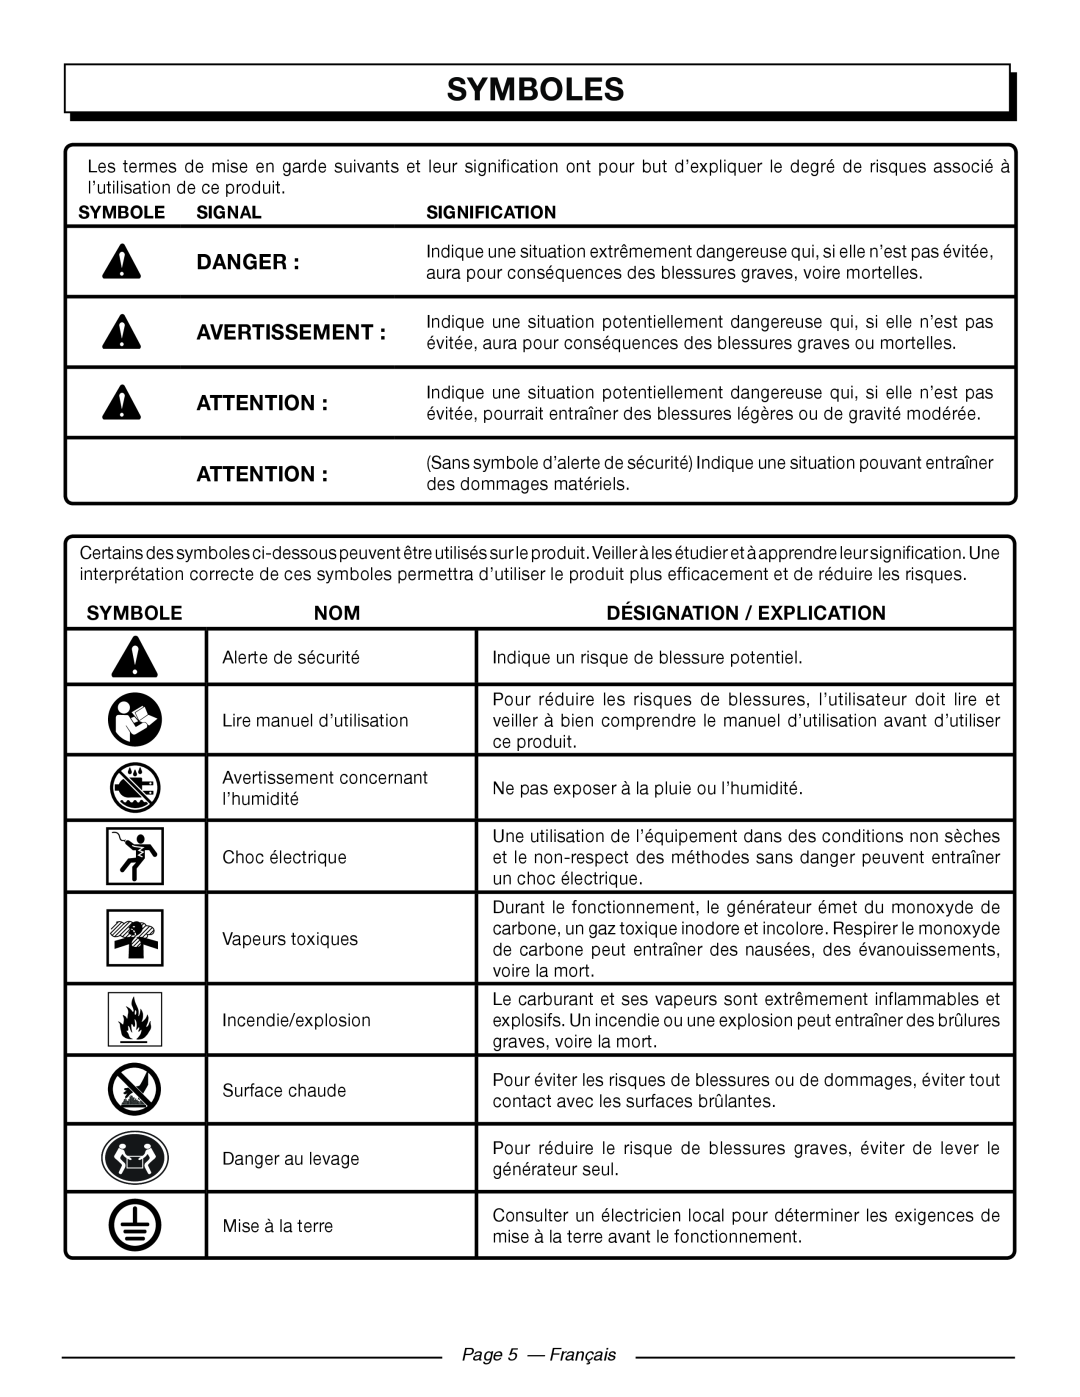 Homelite HGCA5000 Symboles, Désignation / Explication, Symbole Signal, Signification, Page 5 - Français, Danger 